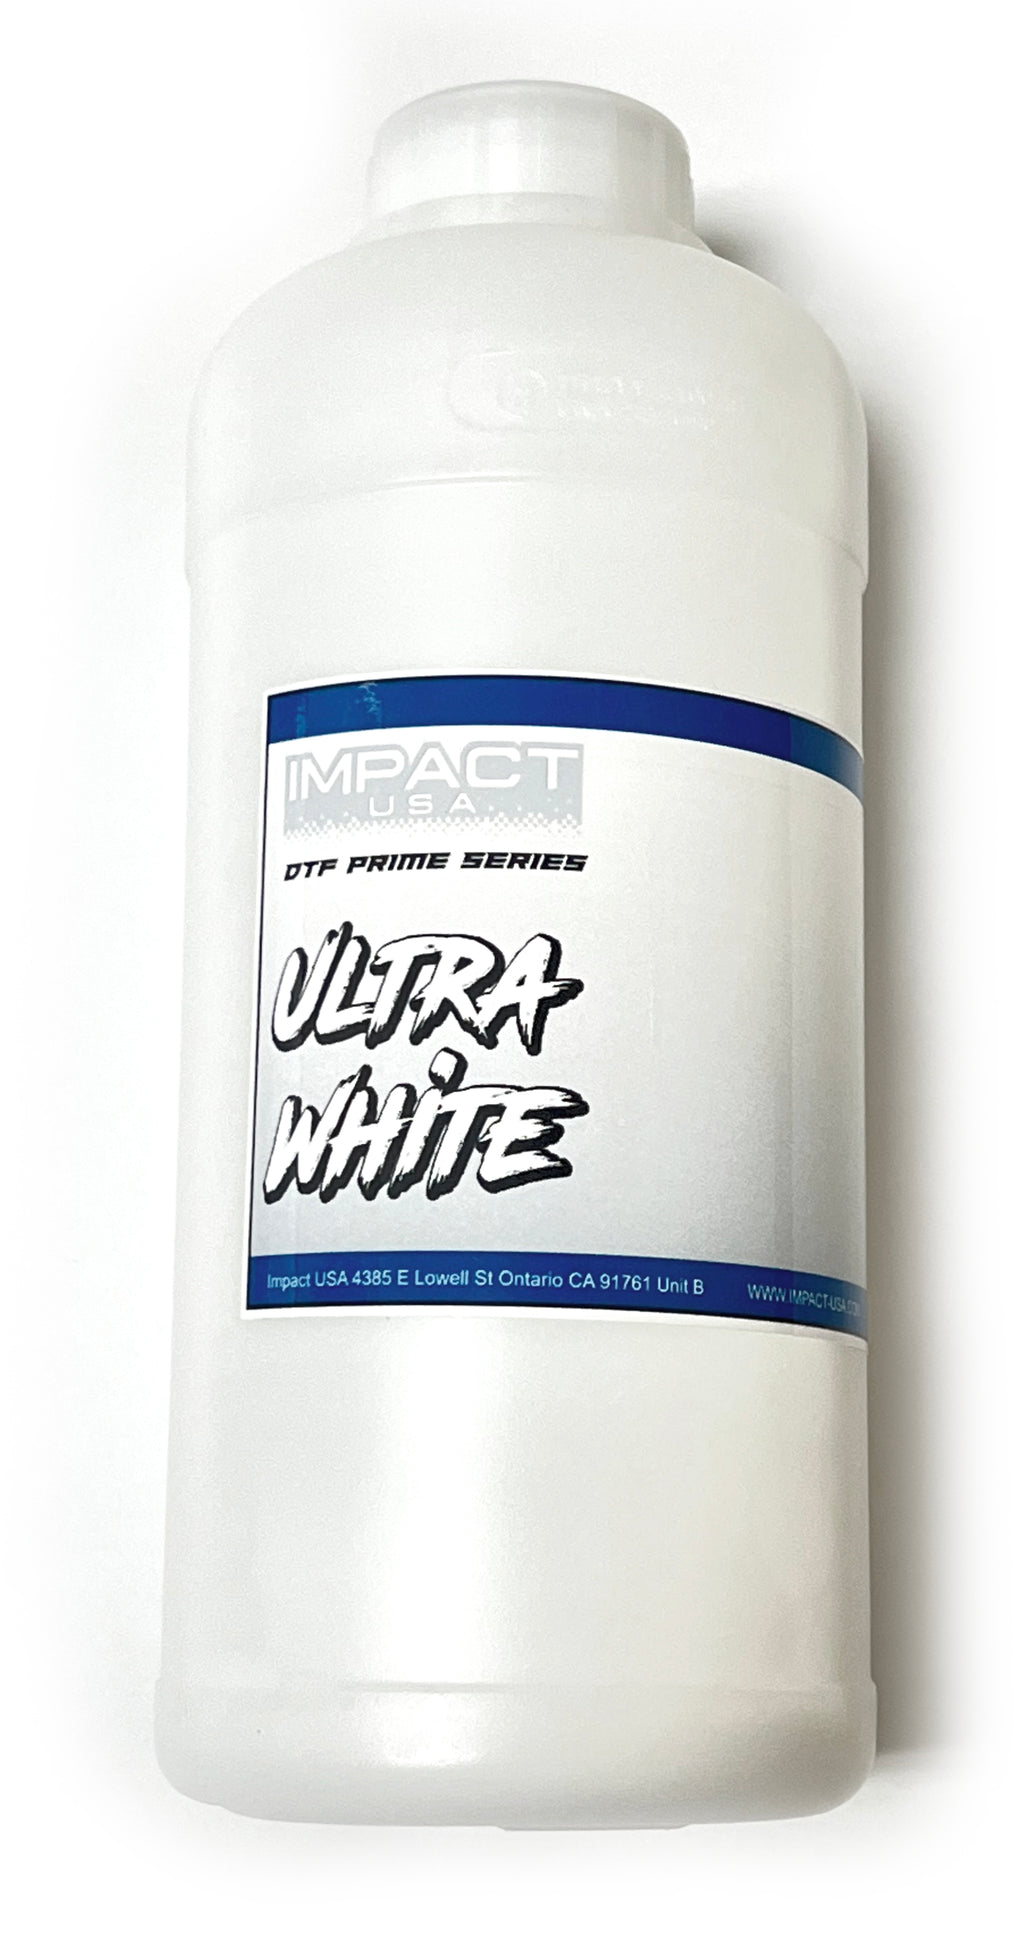 Uninet White DTF Ink For 100 / 1000 Models (500ml)